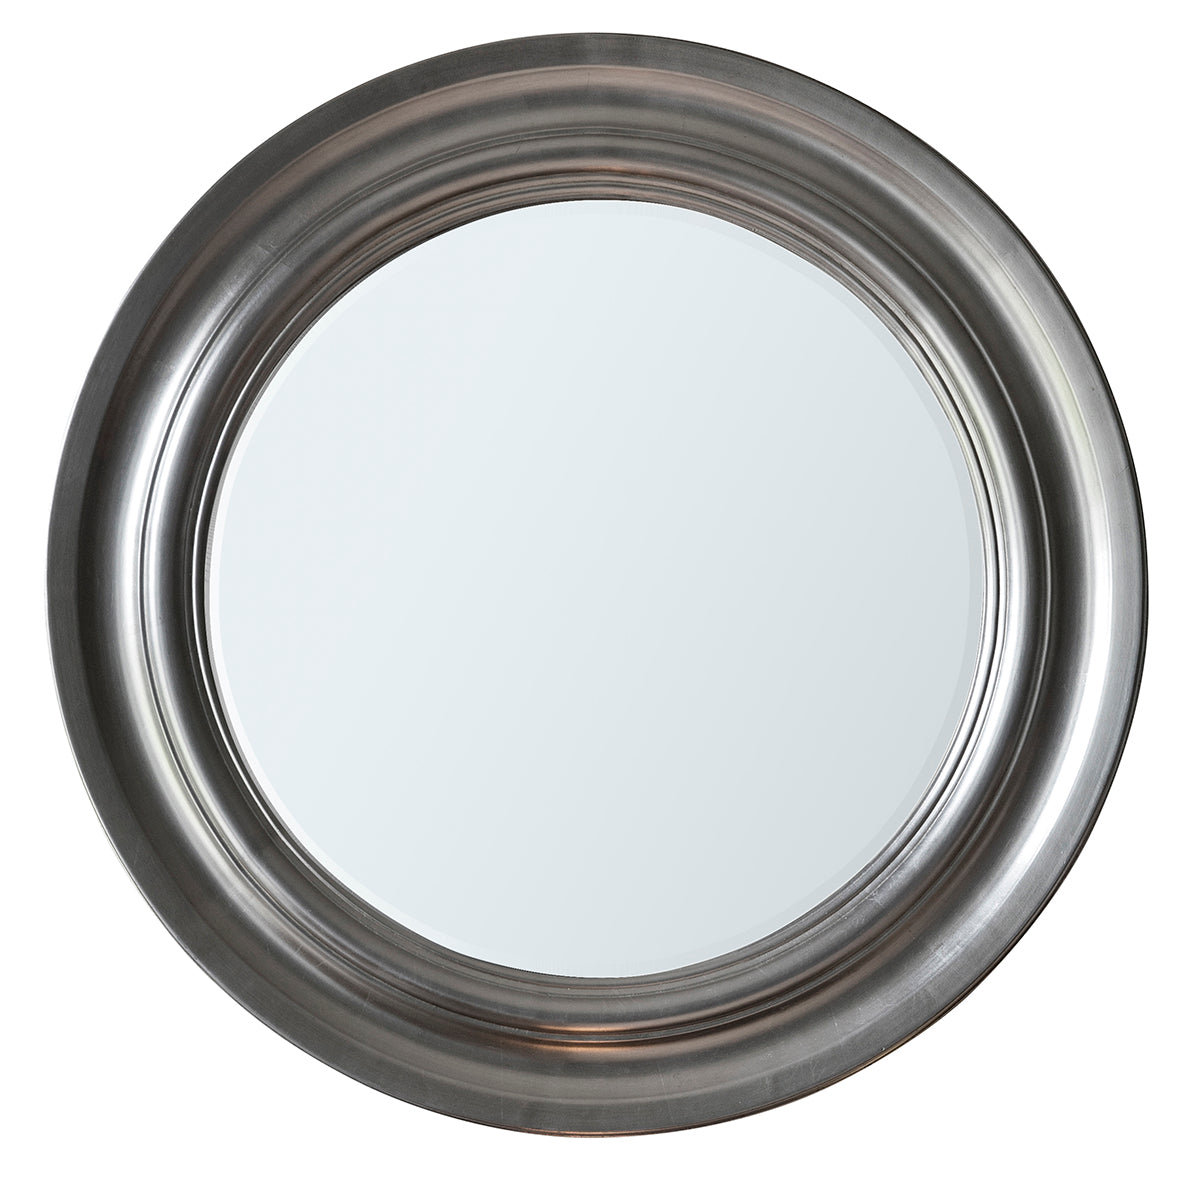 Trevose Silver Circular Mirror